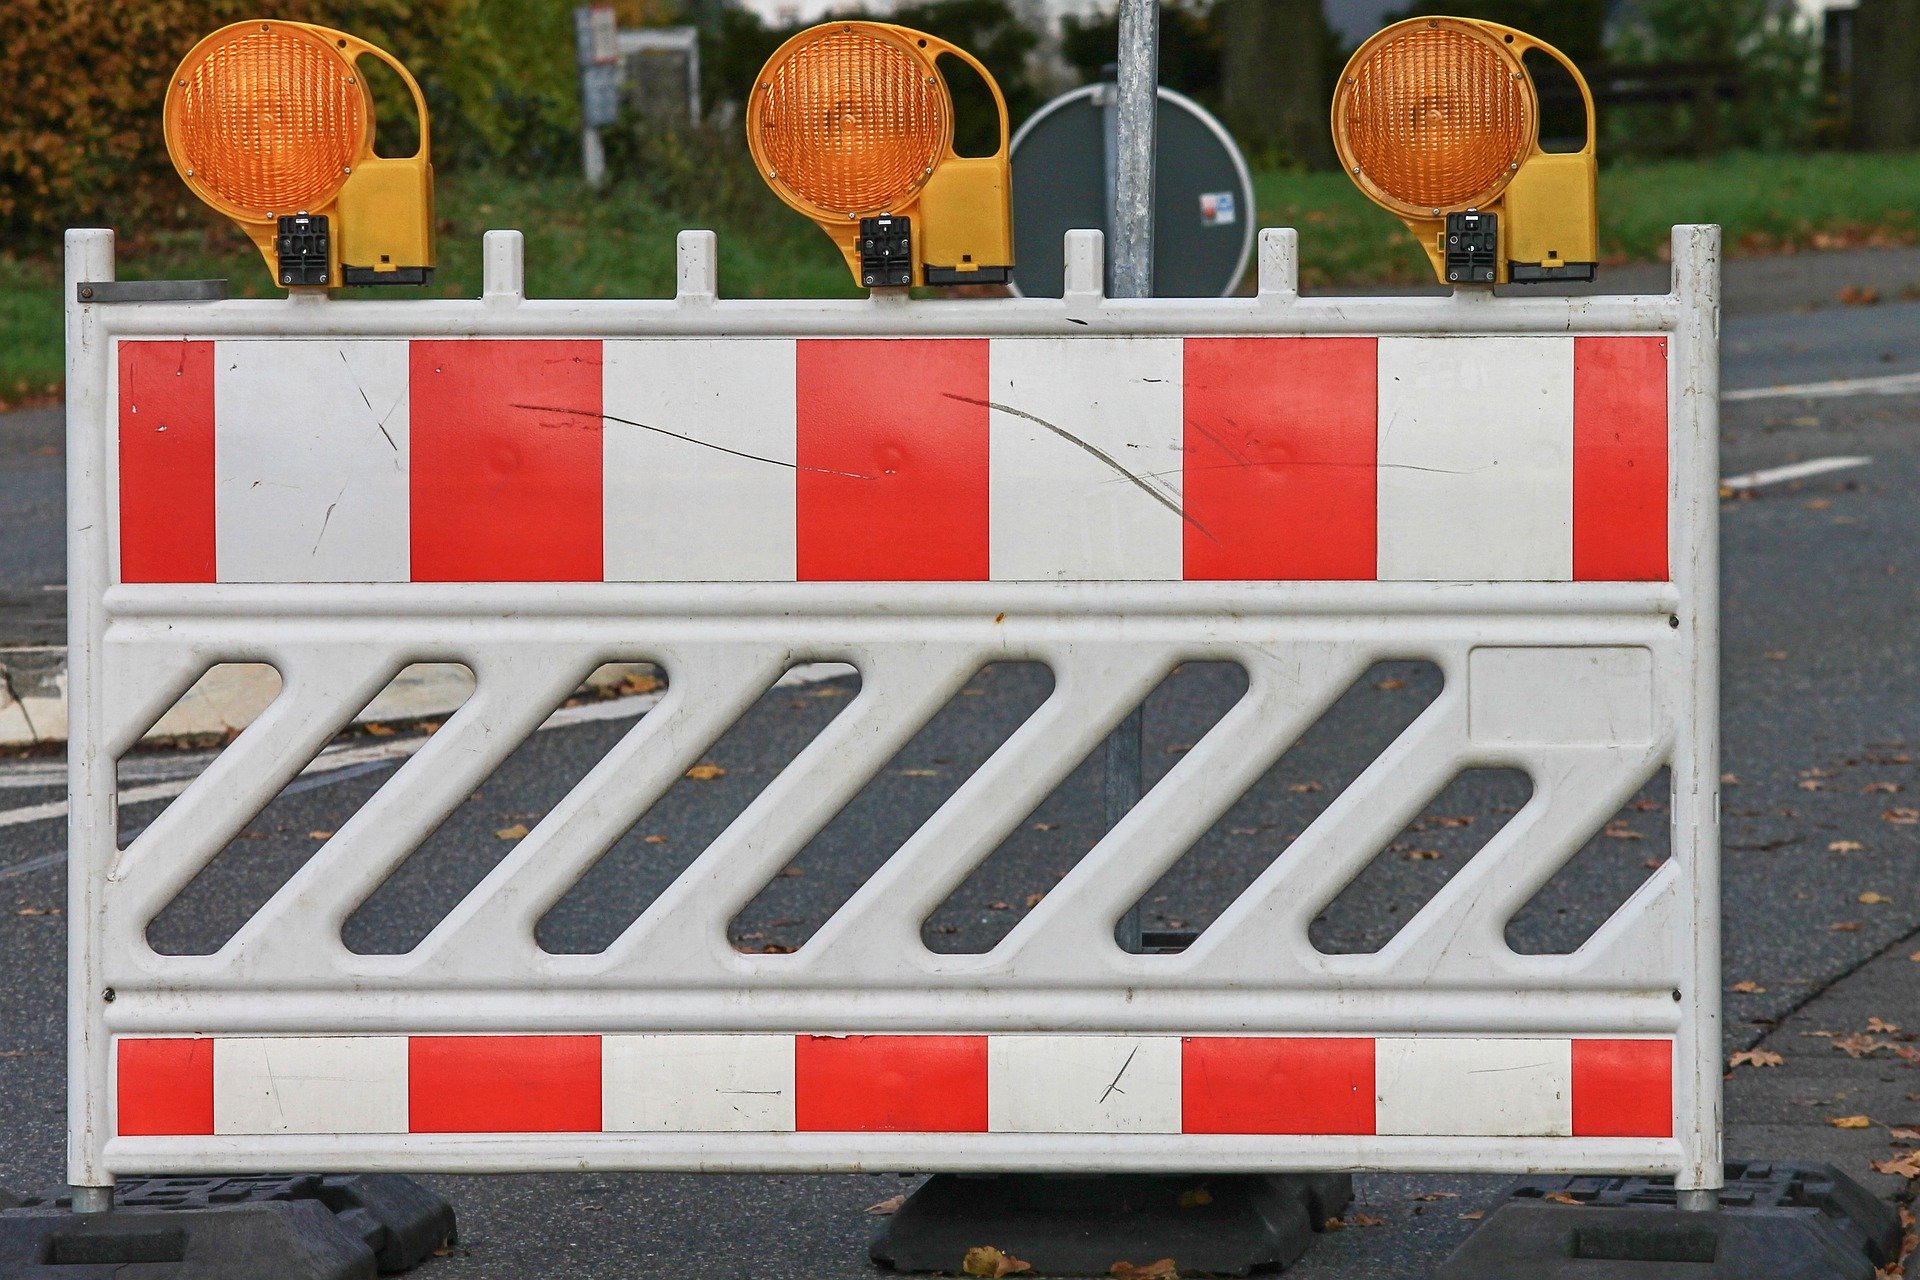 Durchgangsstraße FFB 17 Emmeringer Straße ab 3. Juni gesperrt wegen Sanierungsarbeiten